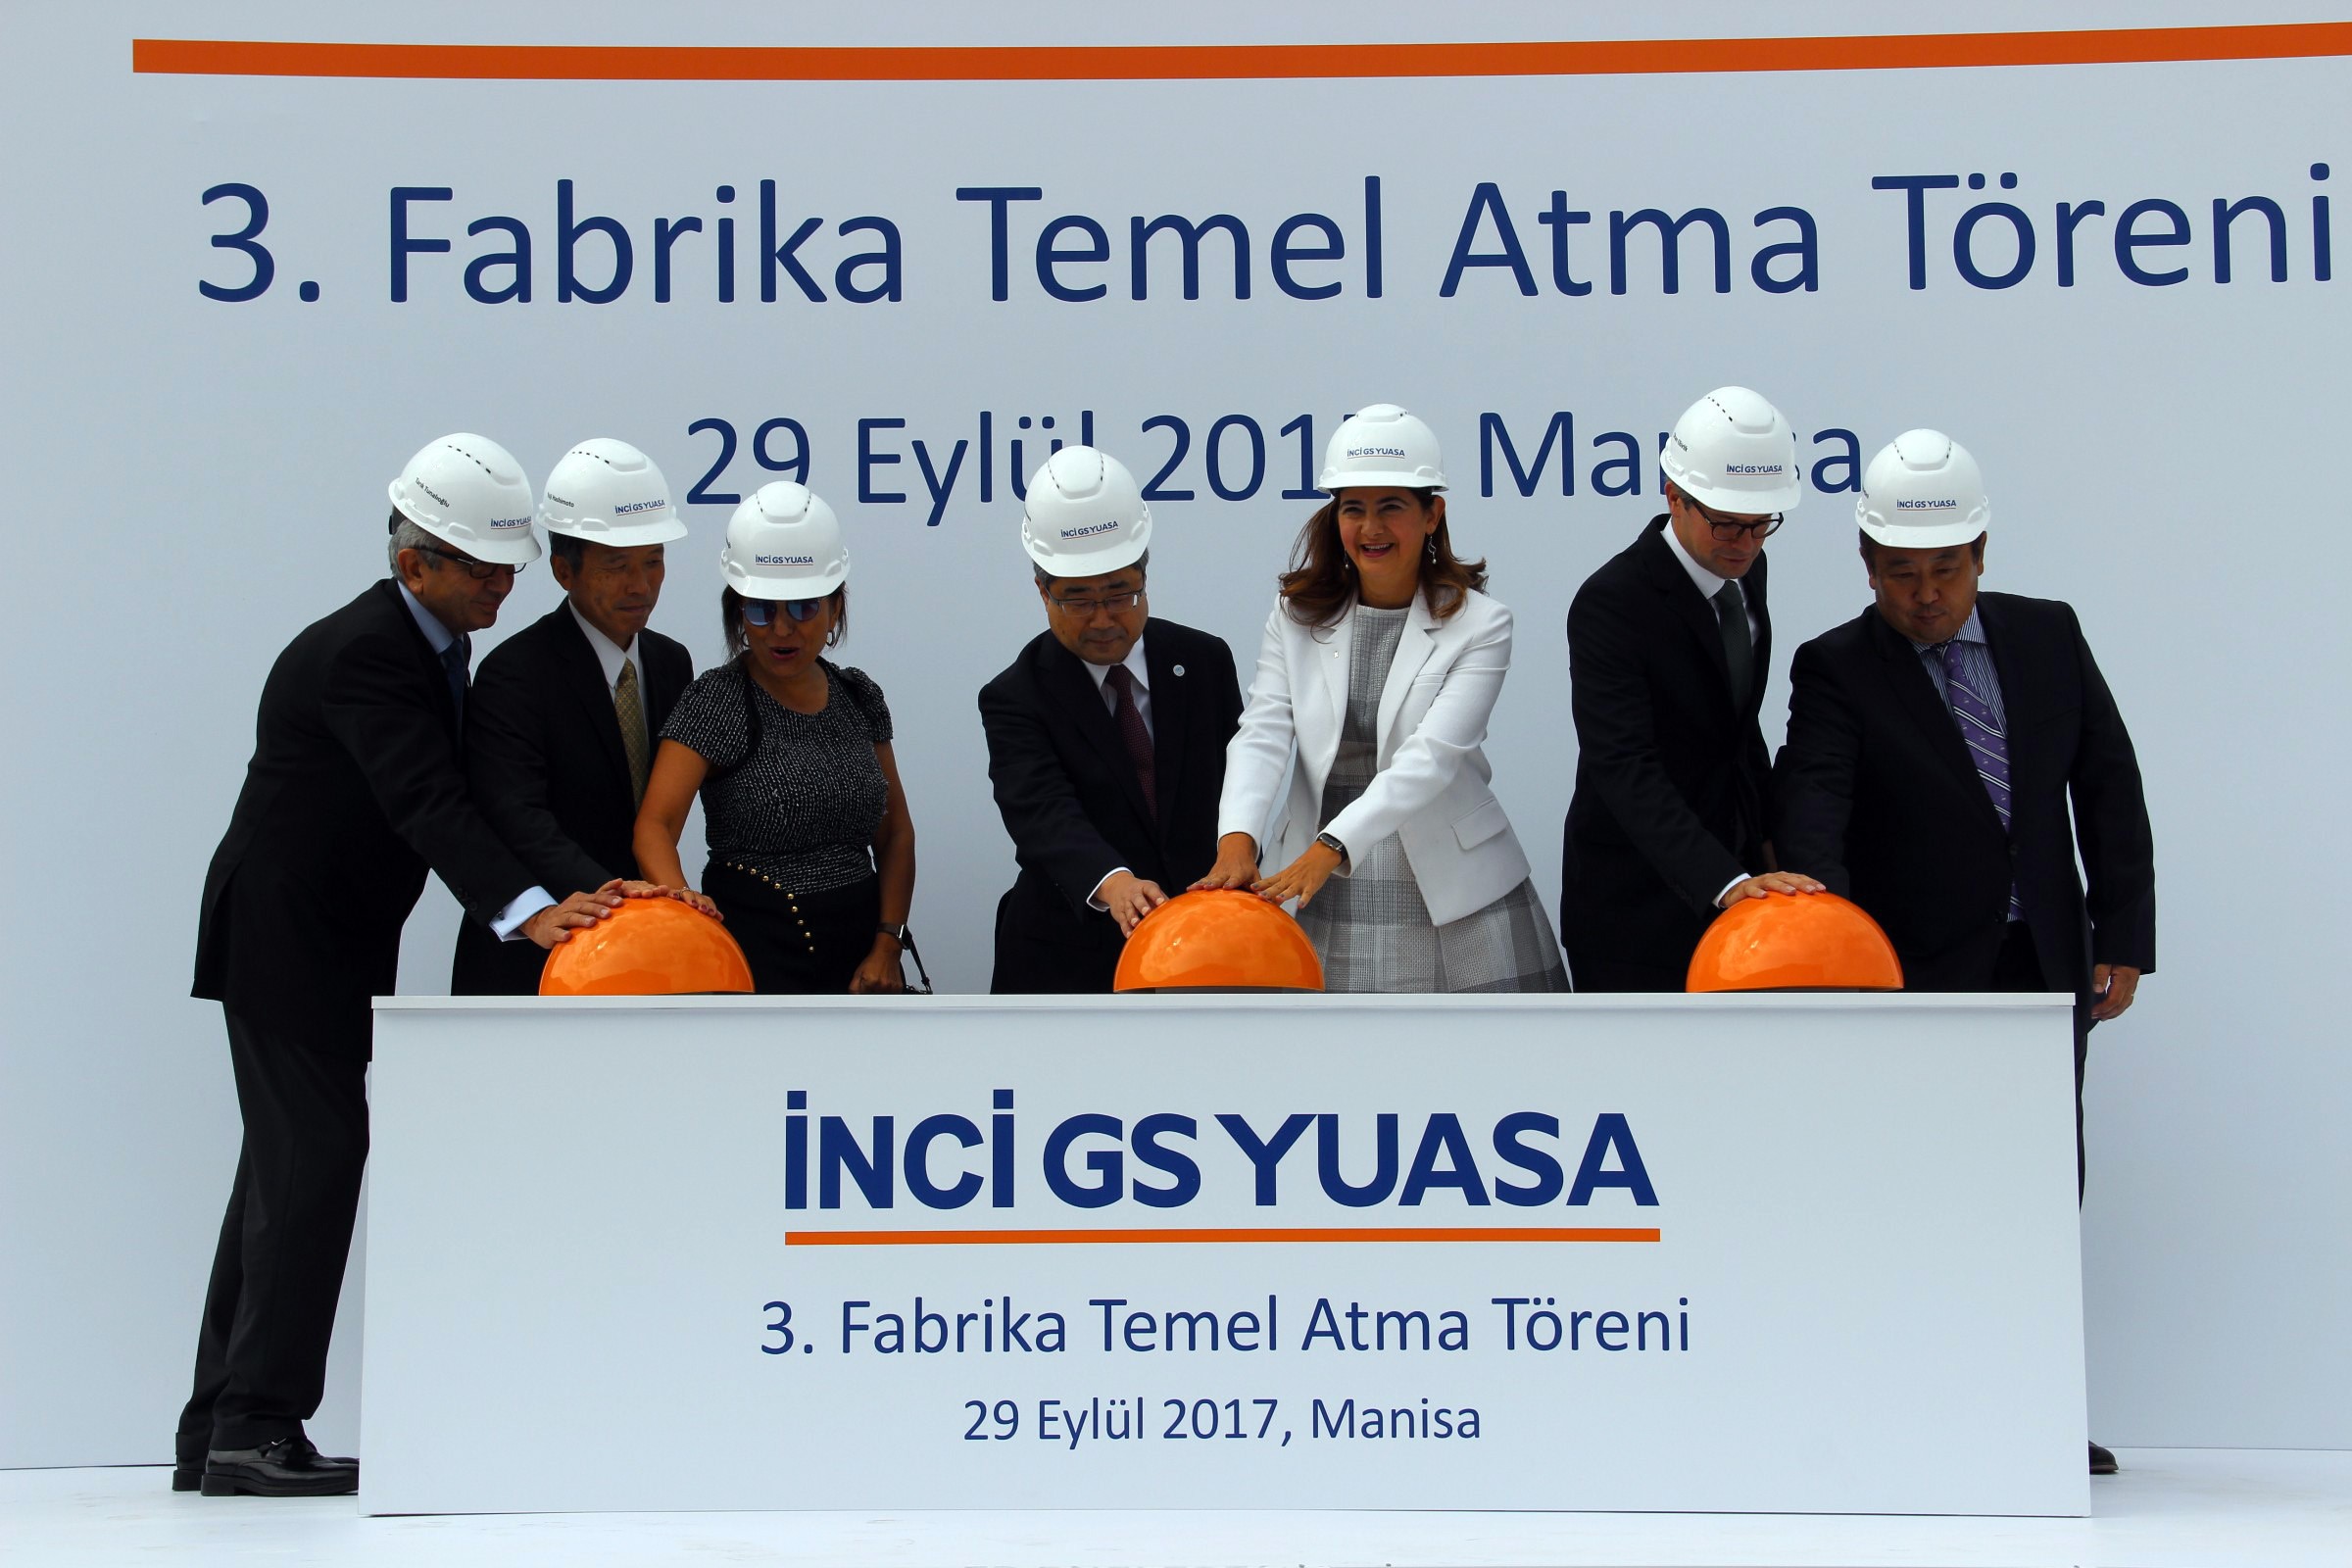 Manisa’da Türk-Japon ortaklığıyla 3 yılda 200 milyonluk yatırım-2437